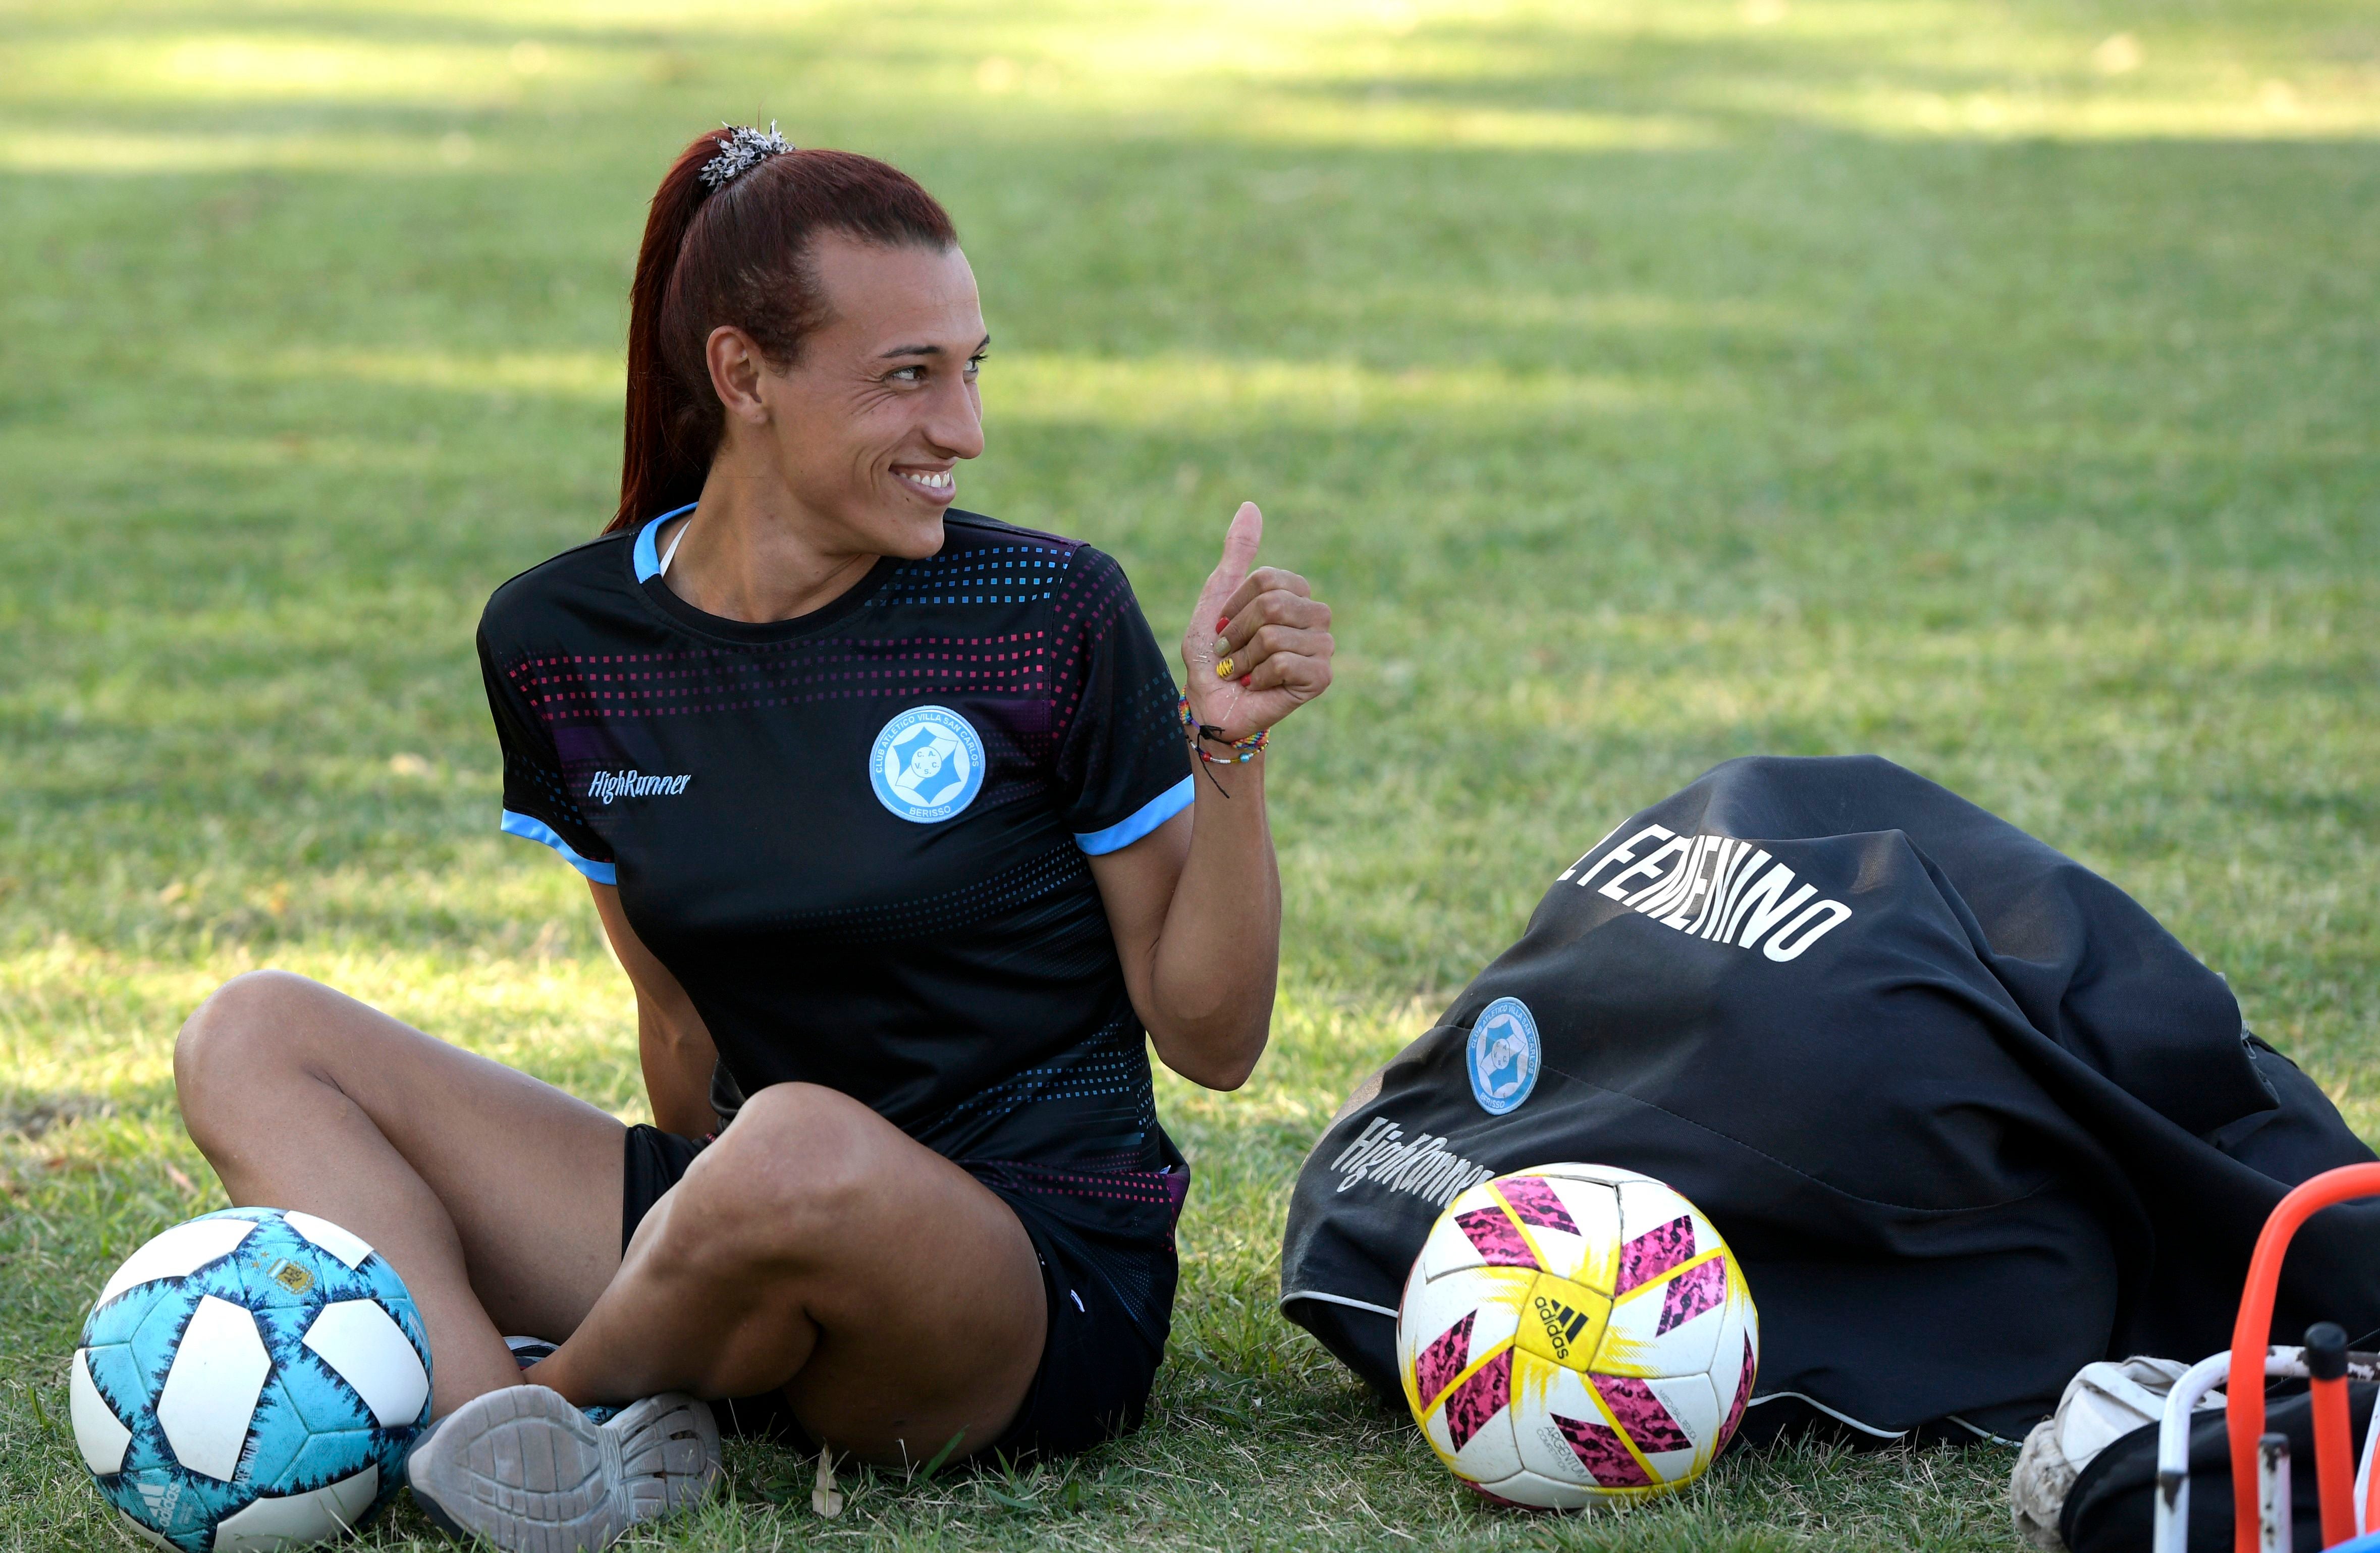 <p>La futbolista argentina Mara Gómez espera el inicio de un entrenamiento con su equipo de fútbol femenino de primera división, Villa San Carlos, en La Plata, Argentina, el 14 de febrero de 2020.</p>